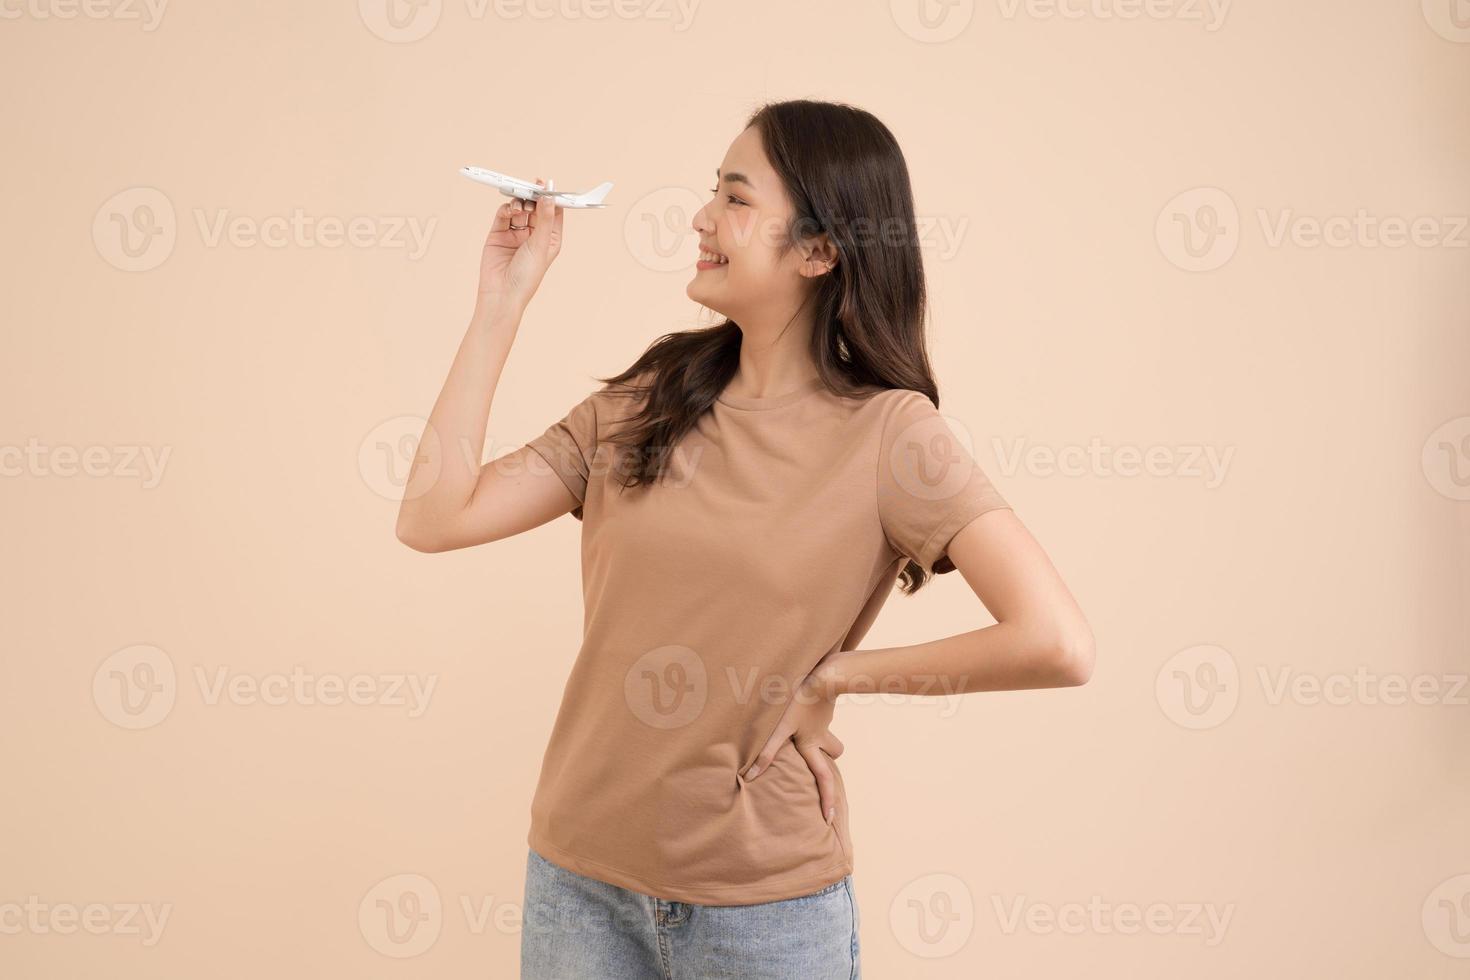 gelukkig jong vrouw staand en Holding een wit speelgoed- vlak dromer in de studio foto